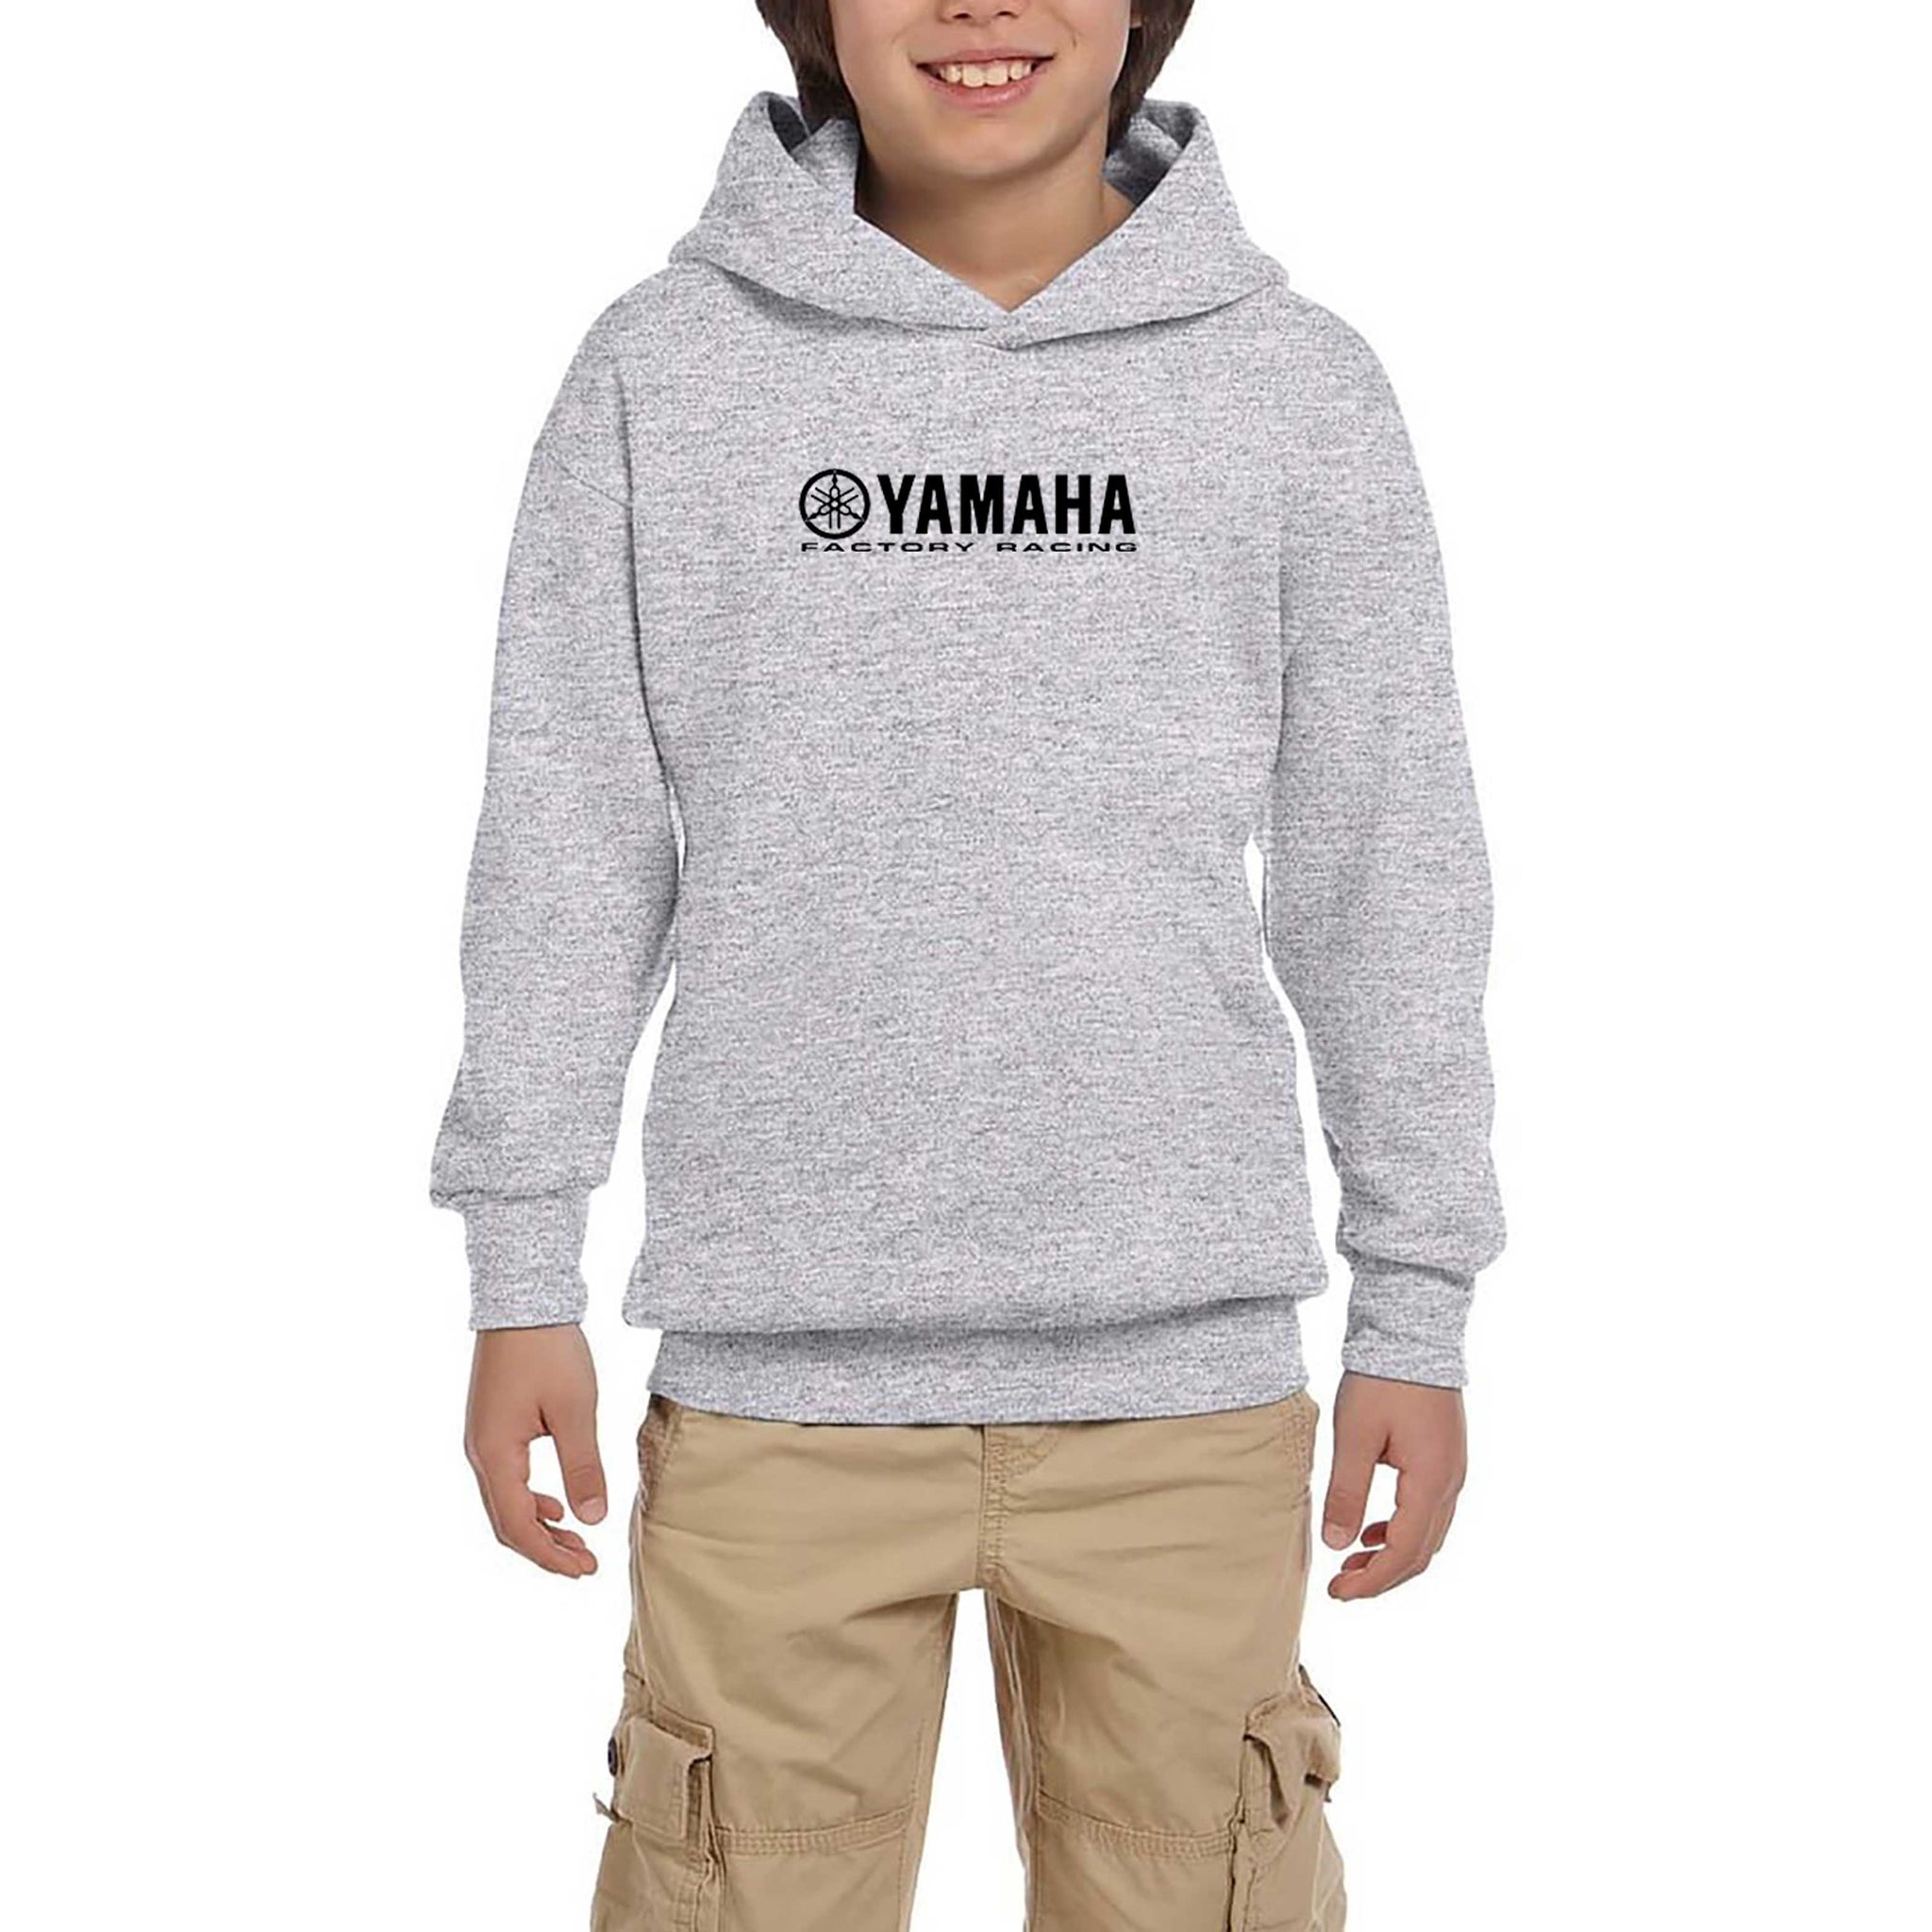 Yamaha Factory Racing Gri Çocuk Kapşonlu Sweatshirt